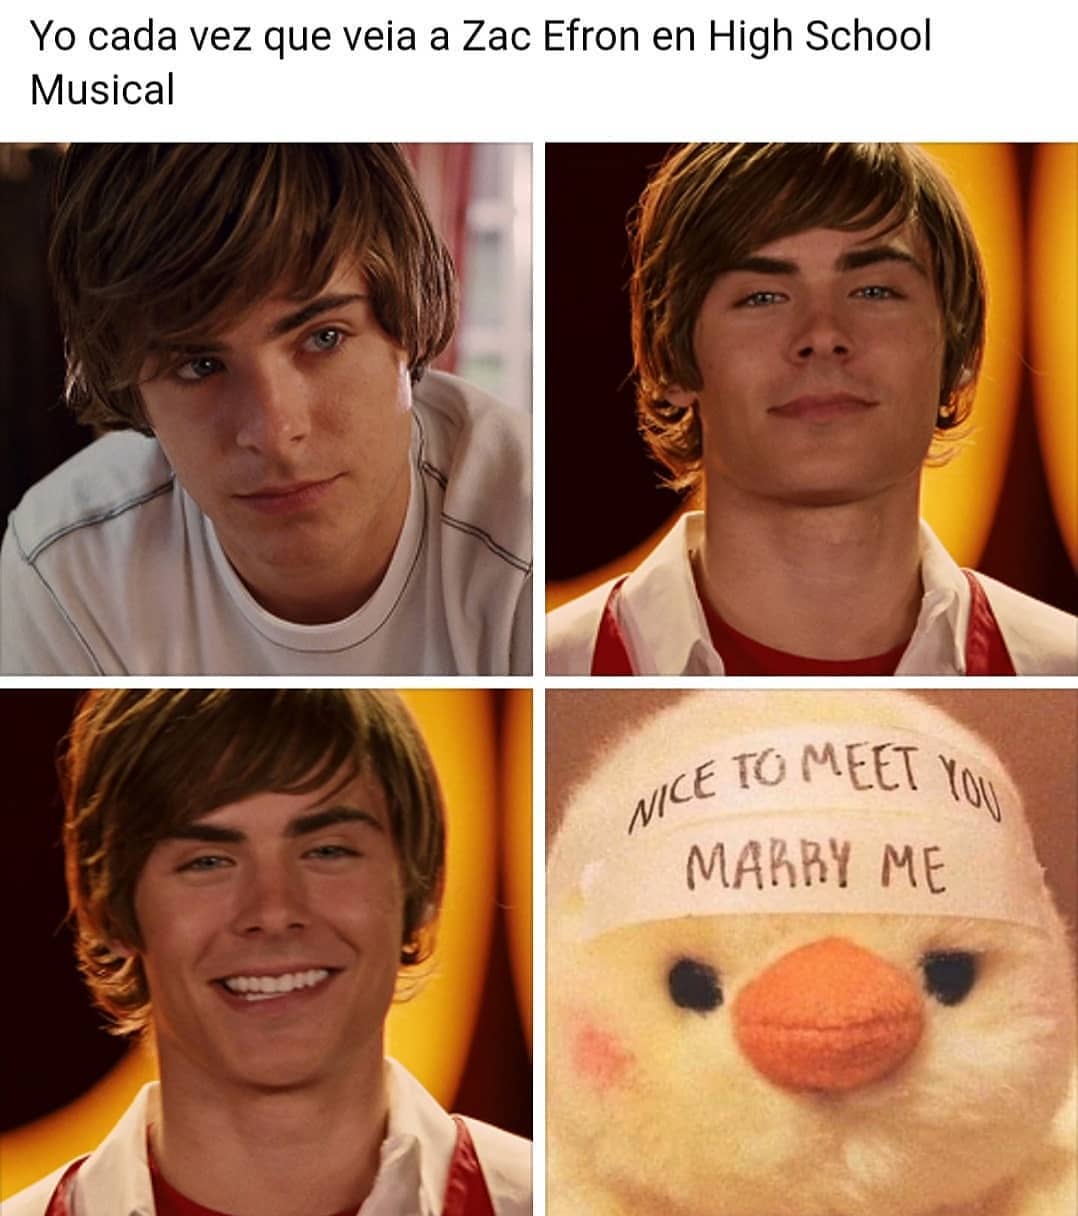 Yo cada vez que veia a Zac Efron en High School Musical. Nice to meet you marry me.